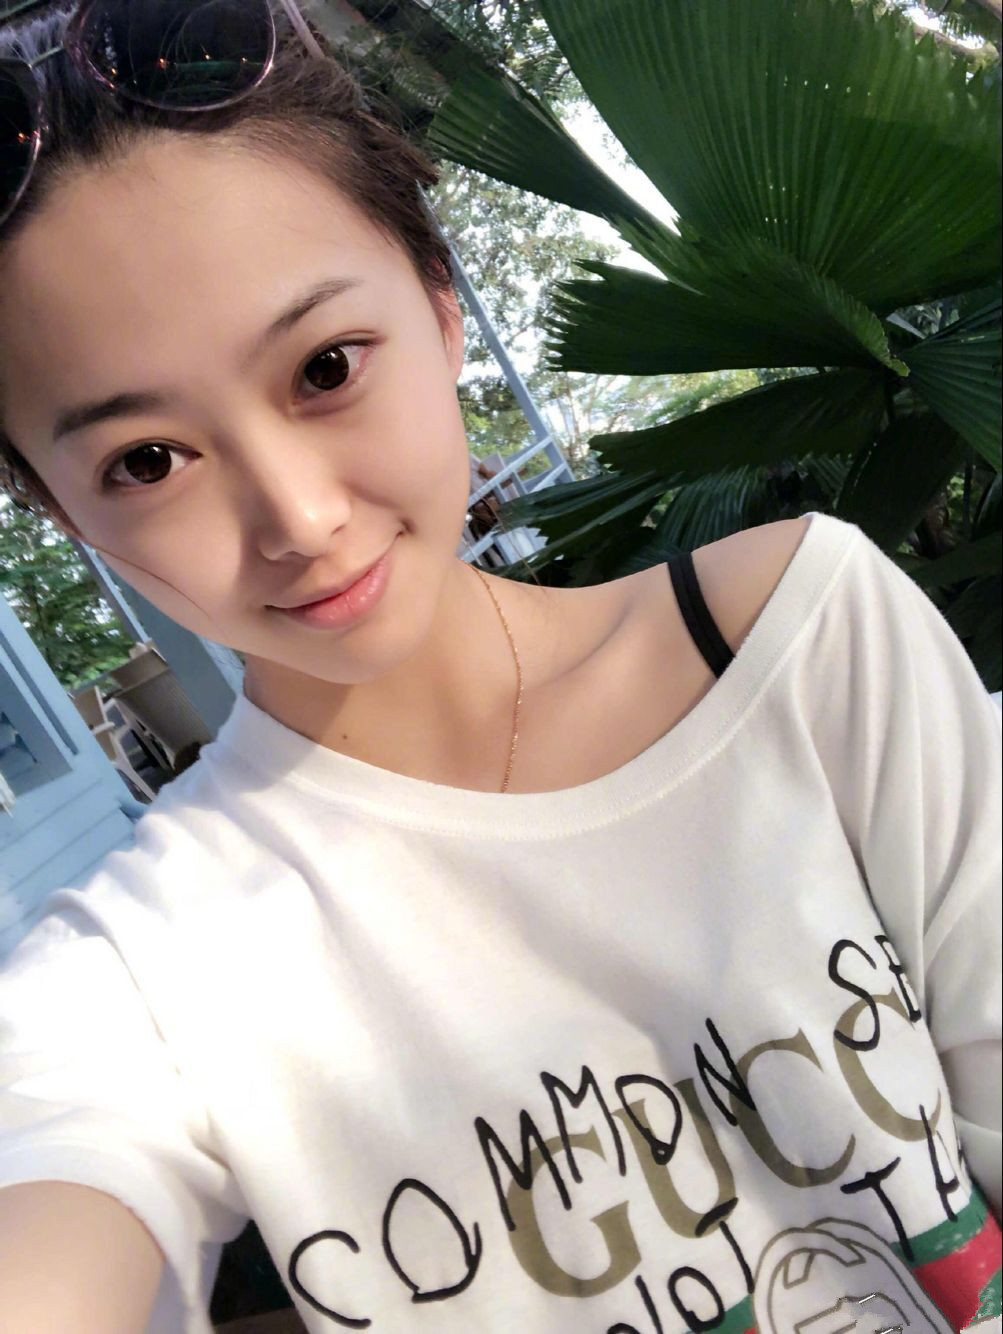 校花女神 她叫张贤莹,就读于燕山大学,曾获国际小姐最佳肌肤奖